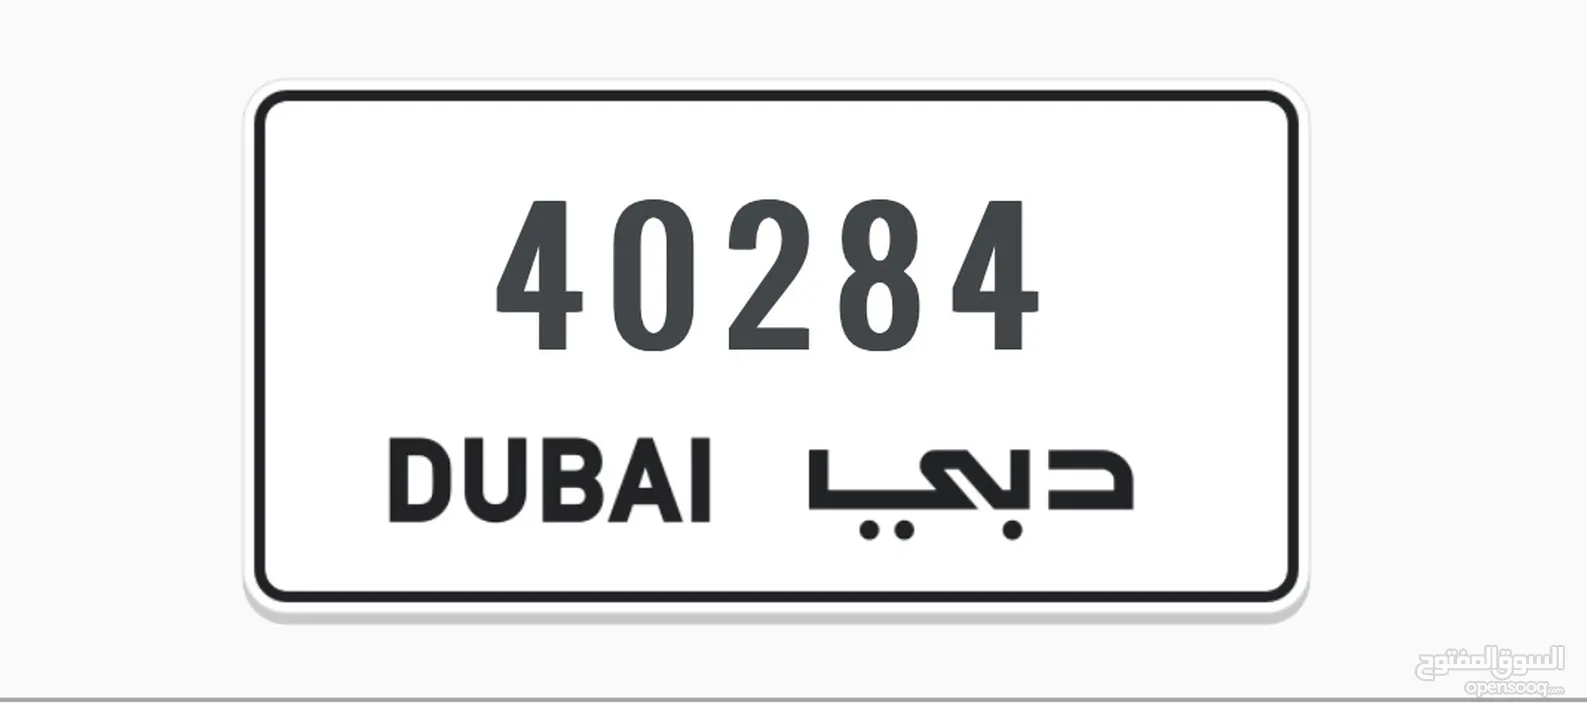 AA 40284 Dubai